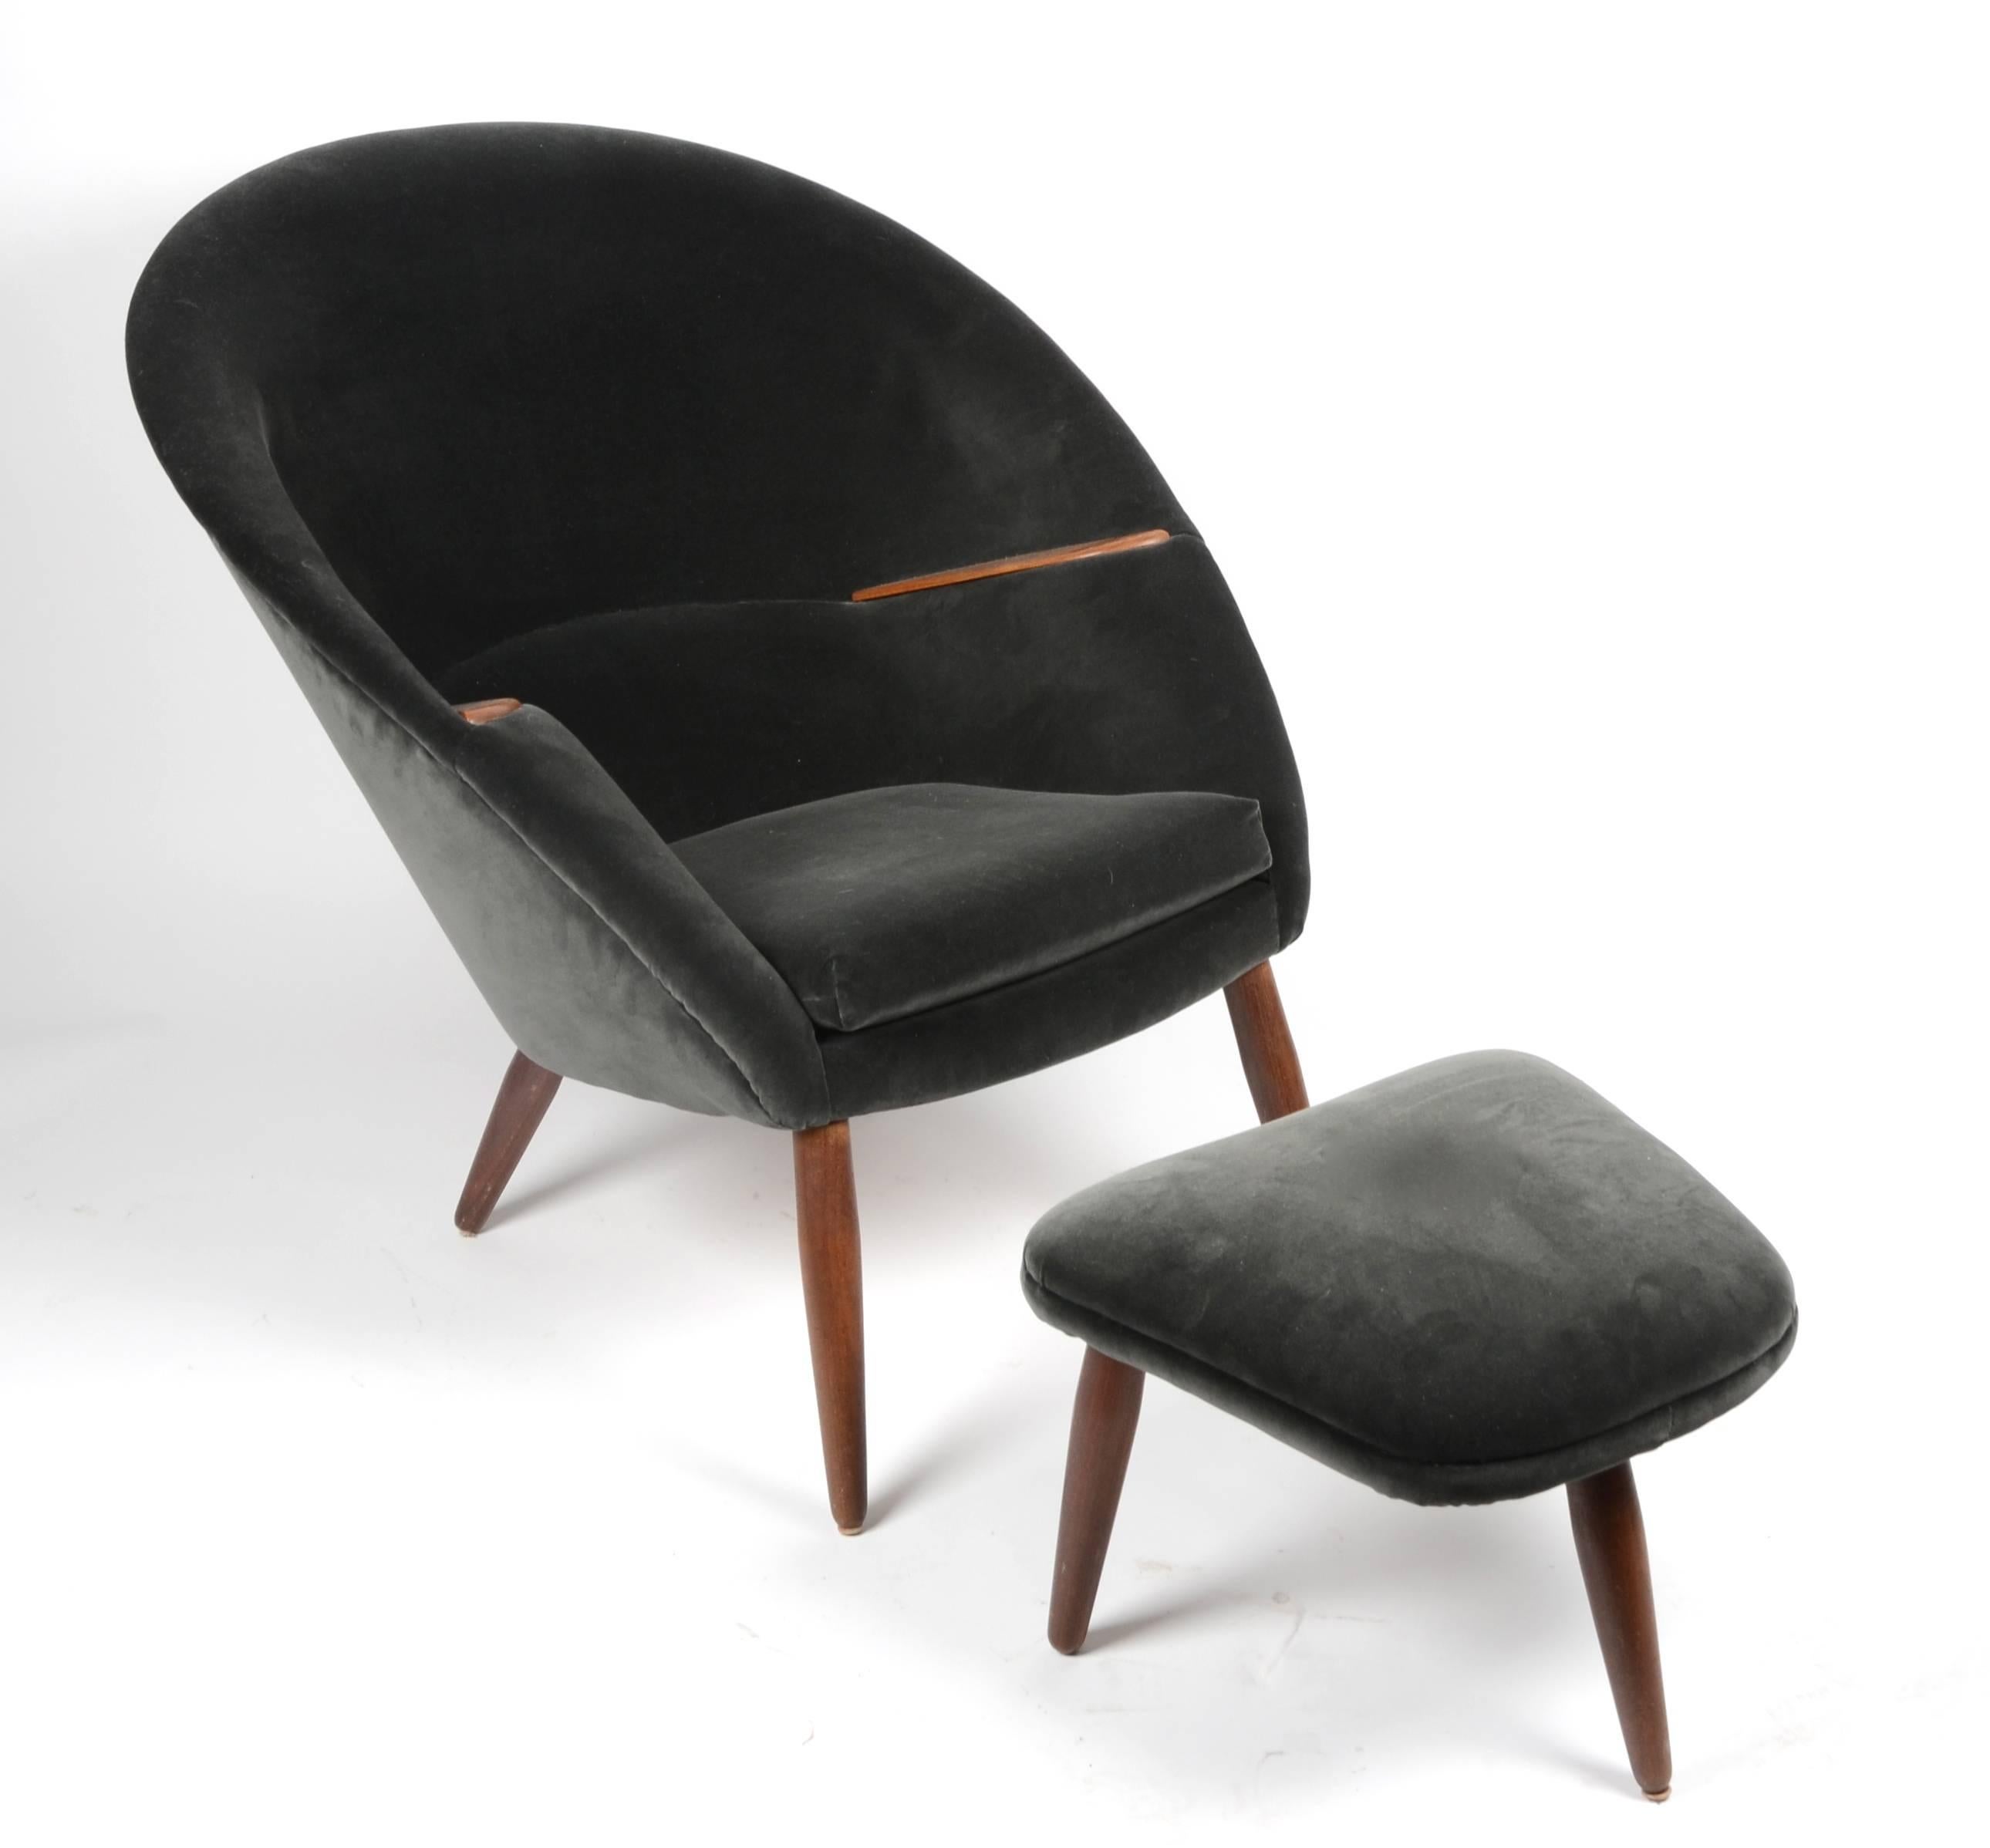 Scandinavian Modern Lounge Chair and Ottoman by Nanna Ditzel, Kolds Savværk, Denmark, 1950s